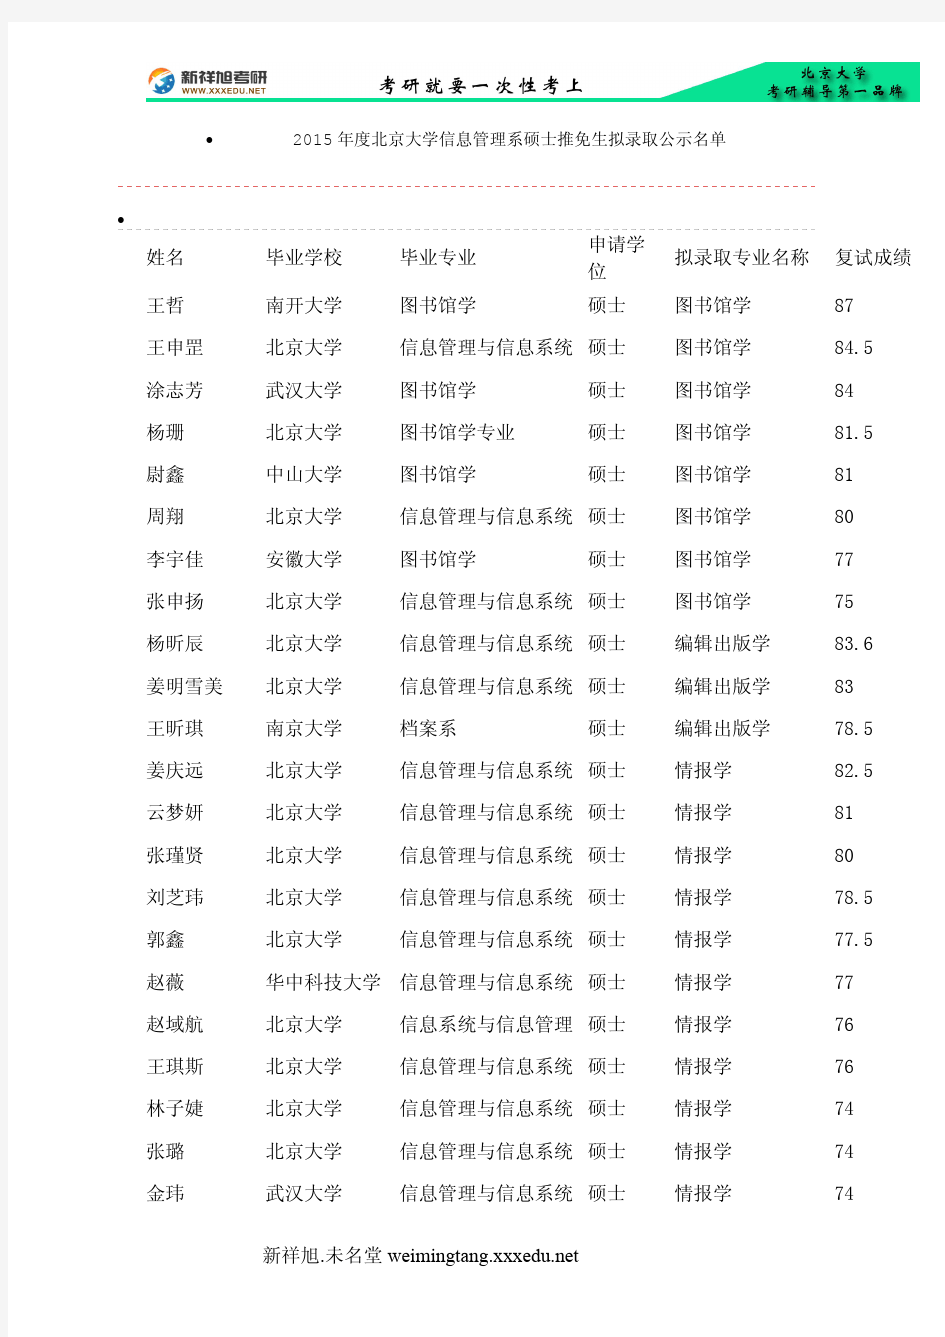 2015年度北京大学信息管理系硕士推免生拟录取公示名单新祥旭考研辅导